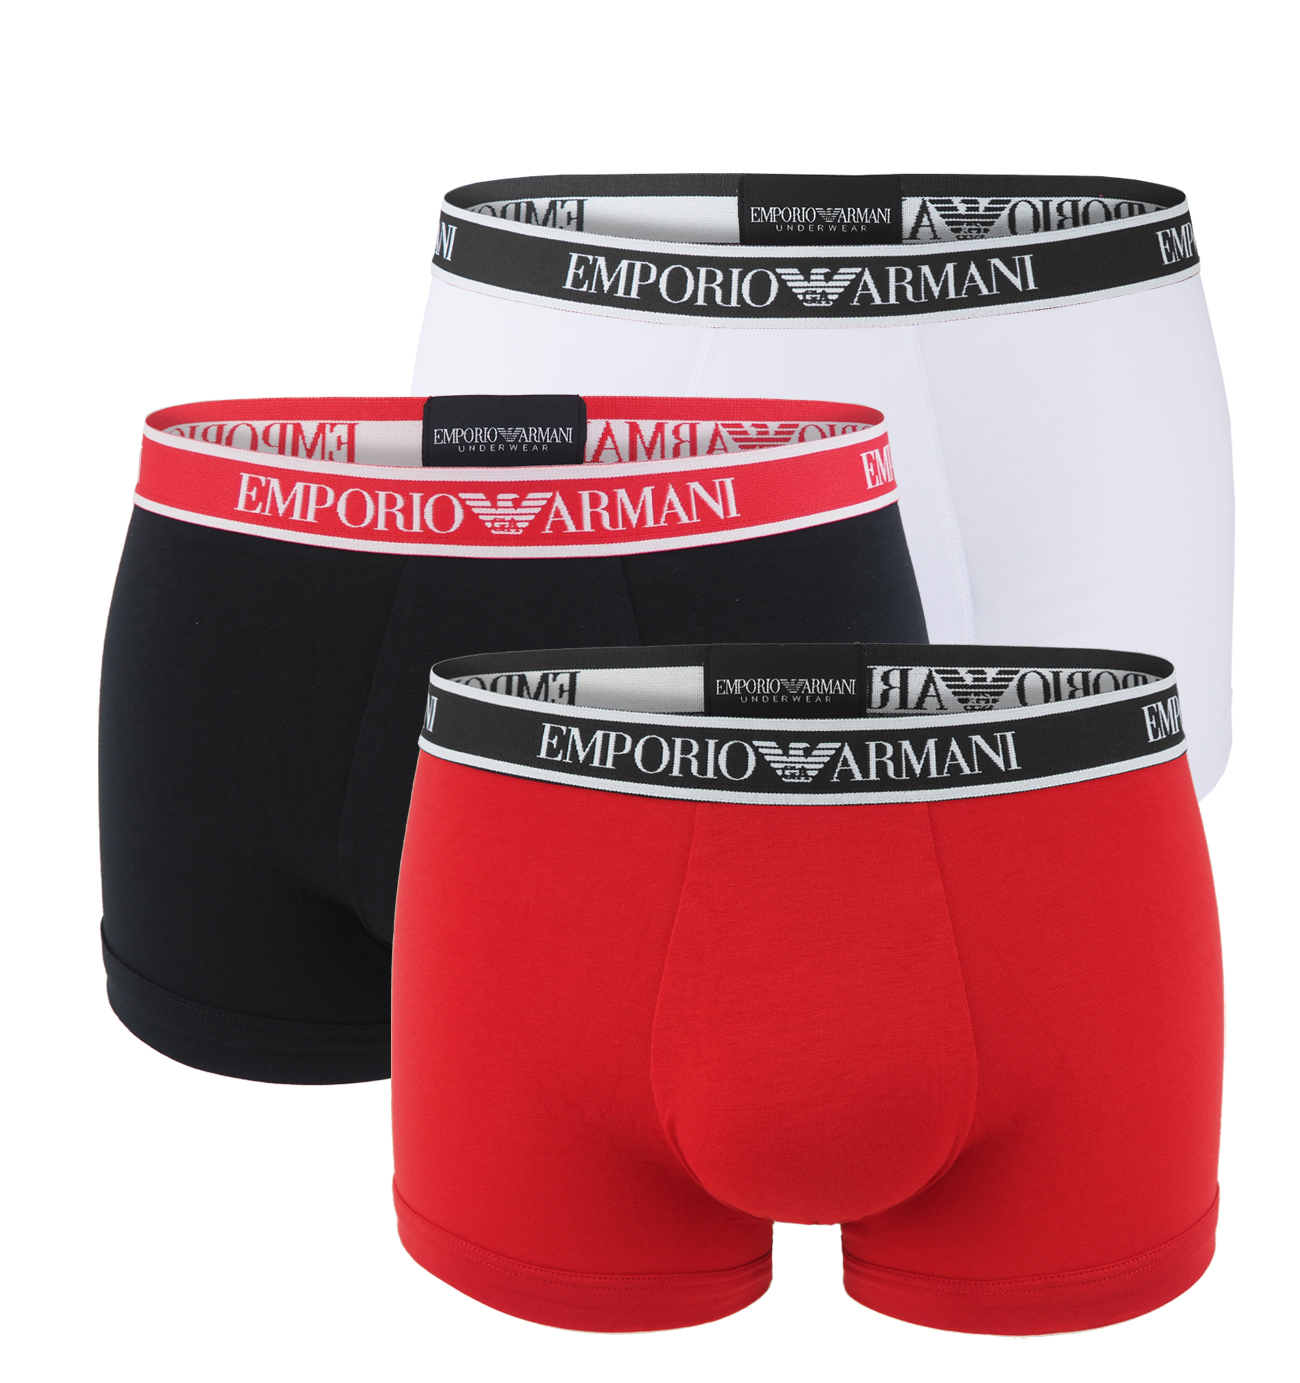 EMPORIO ARMANI - boxerky 3PACK stretch cotton fashion Armani logo nero & rosso combo colore - limited edition